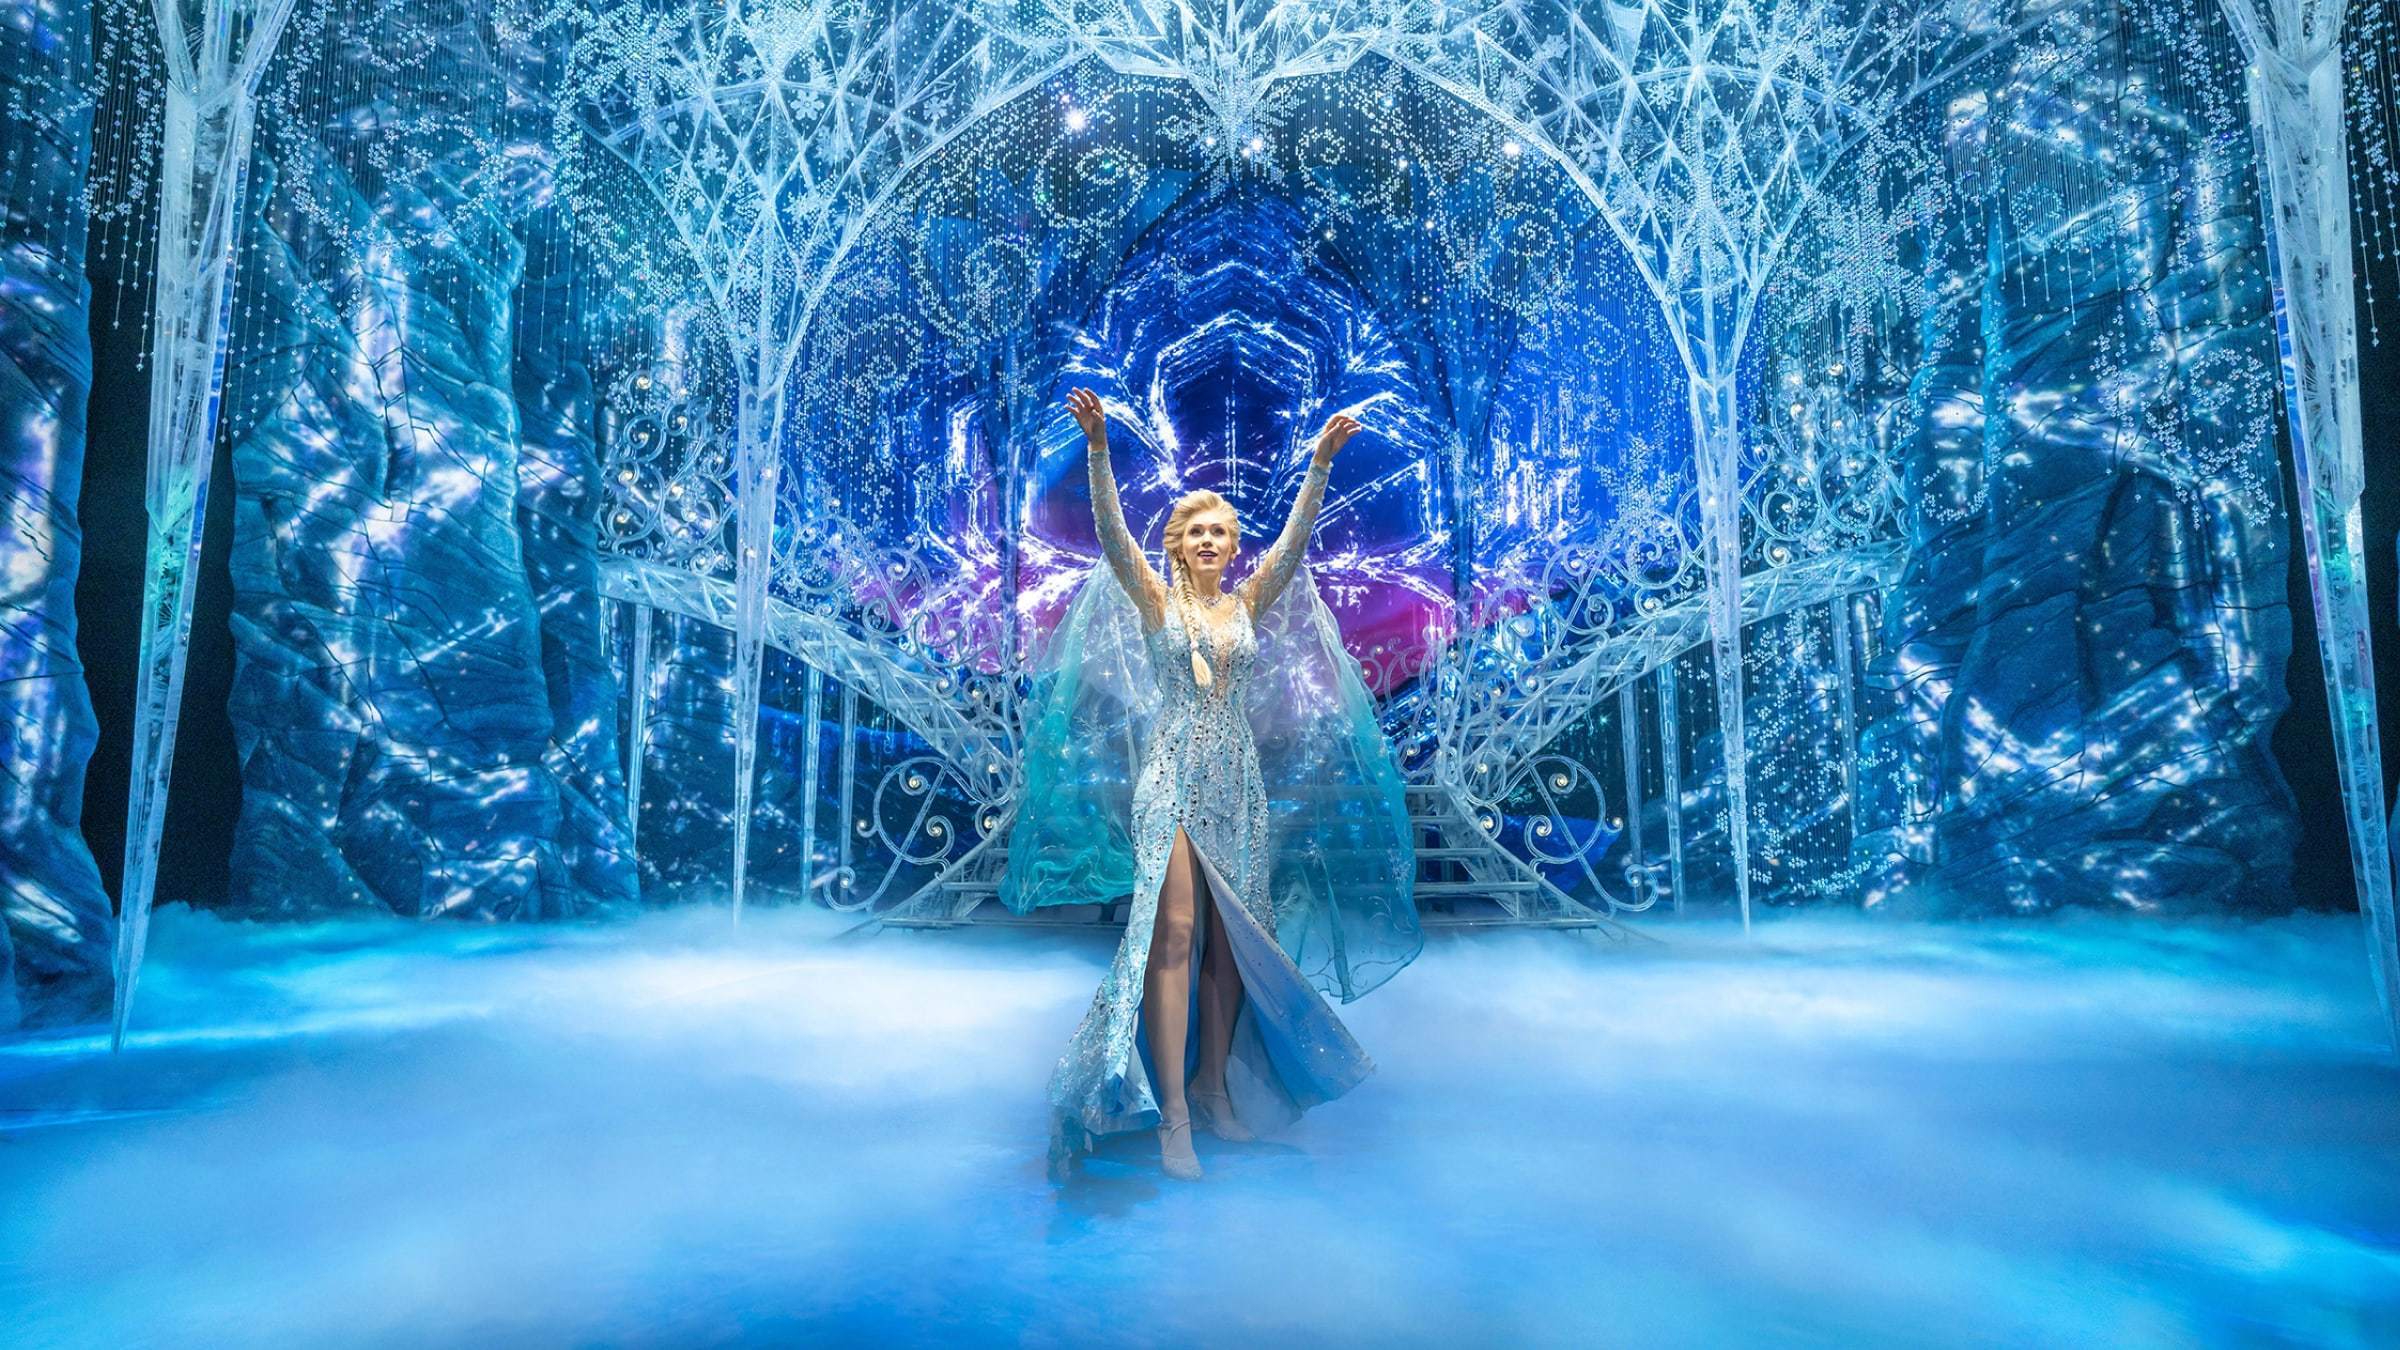 Elsa, wie sie mit den Armen in die Höhe gestreckt im Eispalast steht.